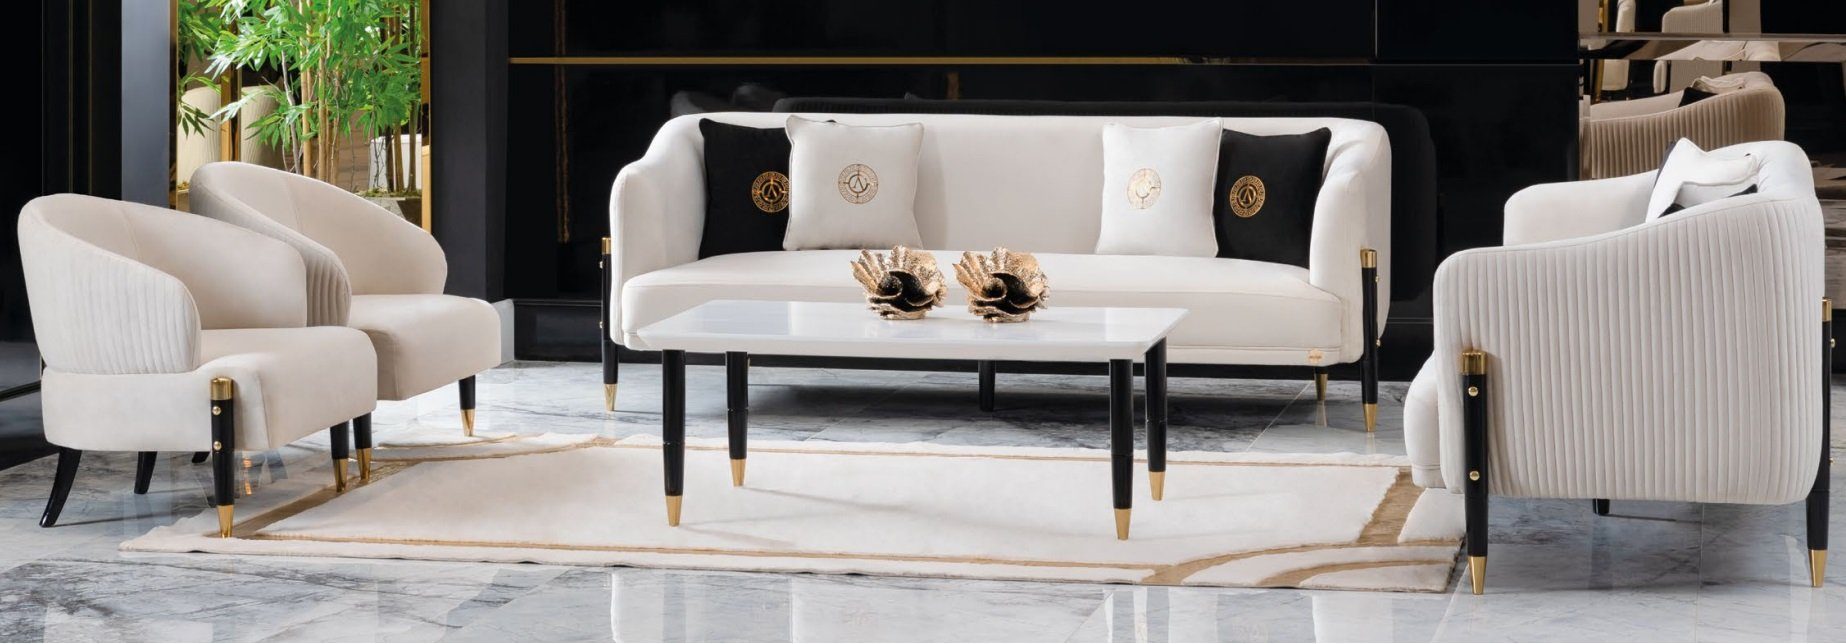 in Sofas JVmoebel Couch Made Sofagarnitur Weiße Sofa Design Samt Sitz 3+3+1+1, Polster Europe